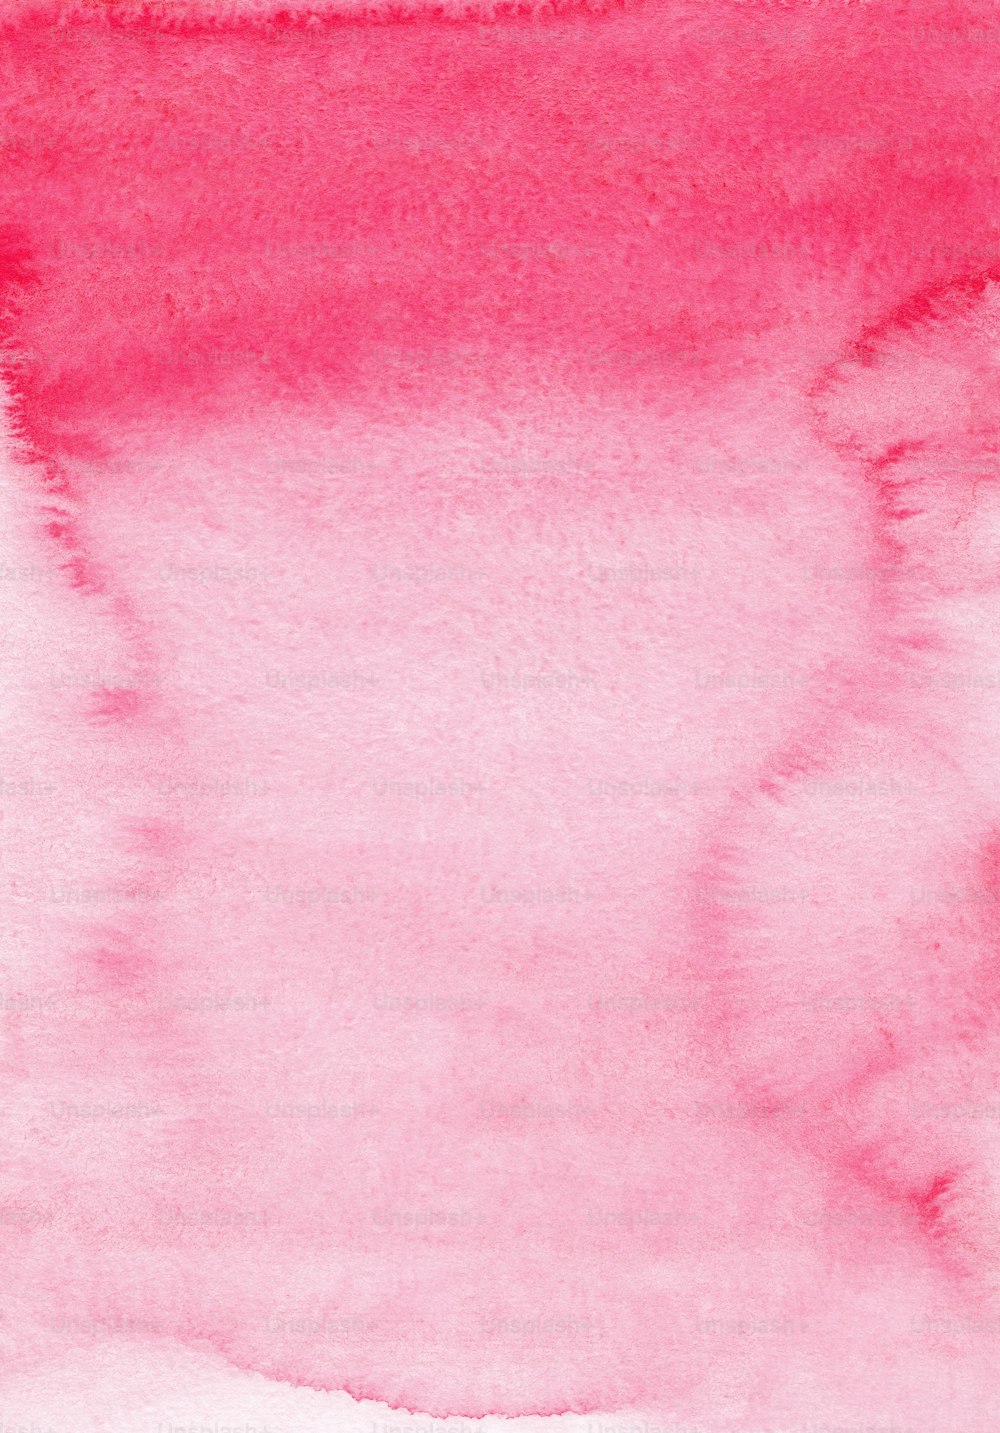 um fundo de aquarela rosa com uma borda branca